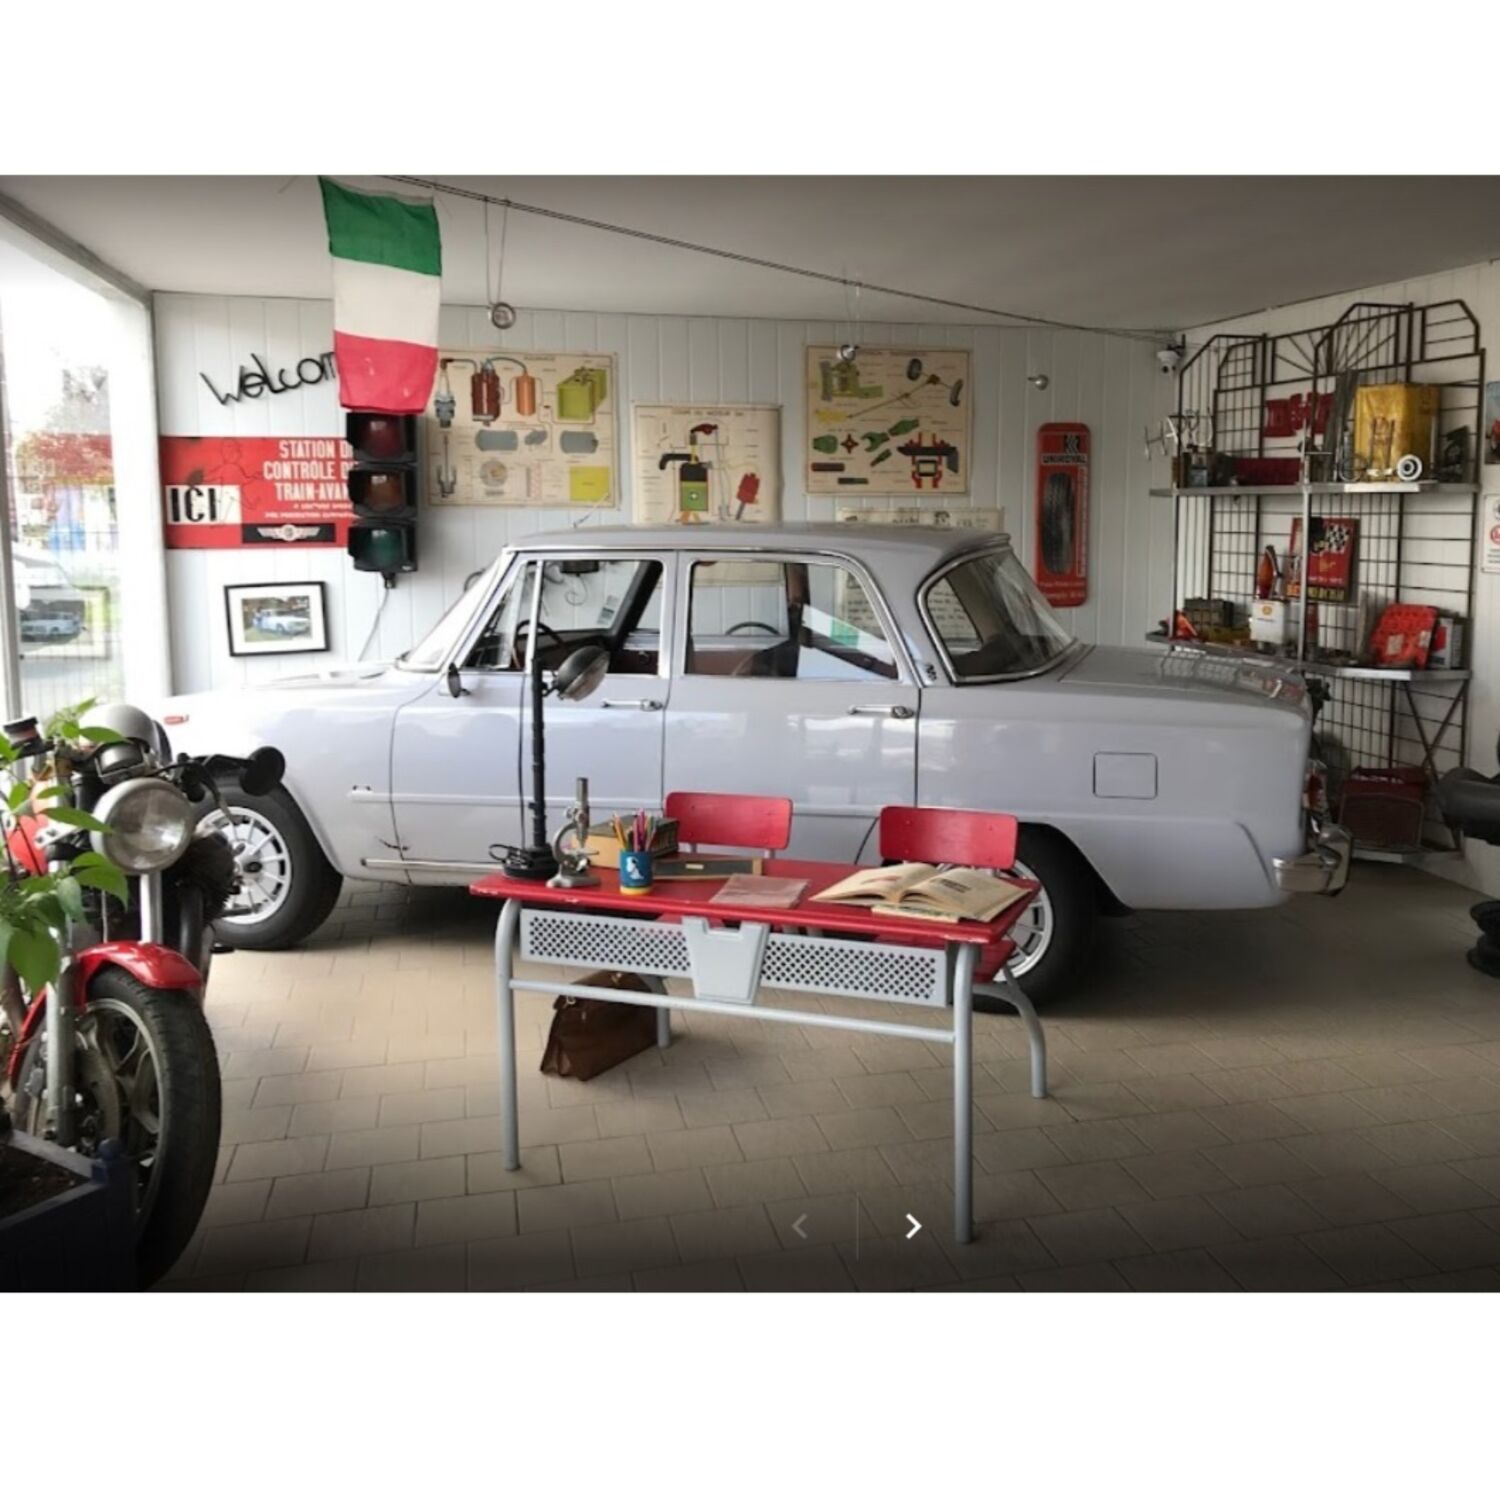 AUTOMOBILIA : un garage associatif à Lanester pour les passionnés de véhicules anciens